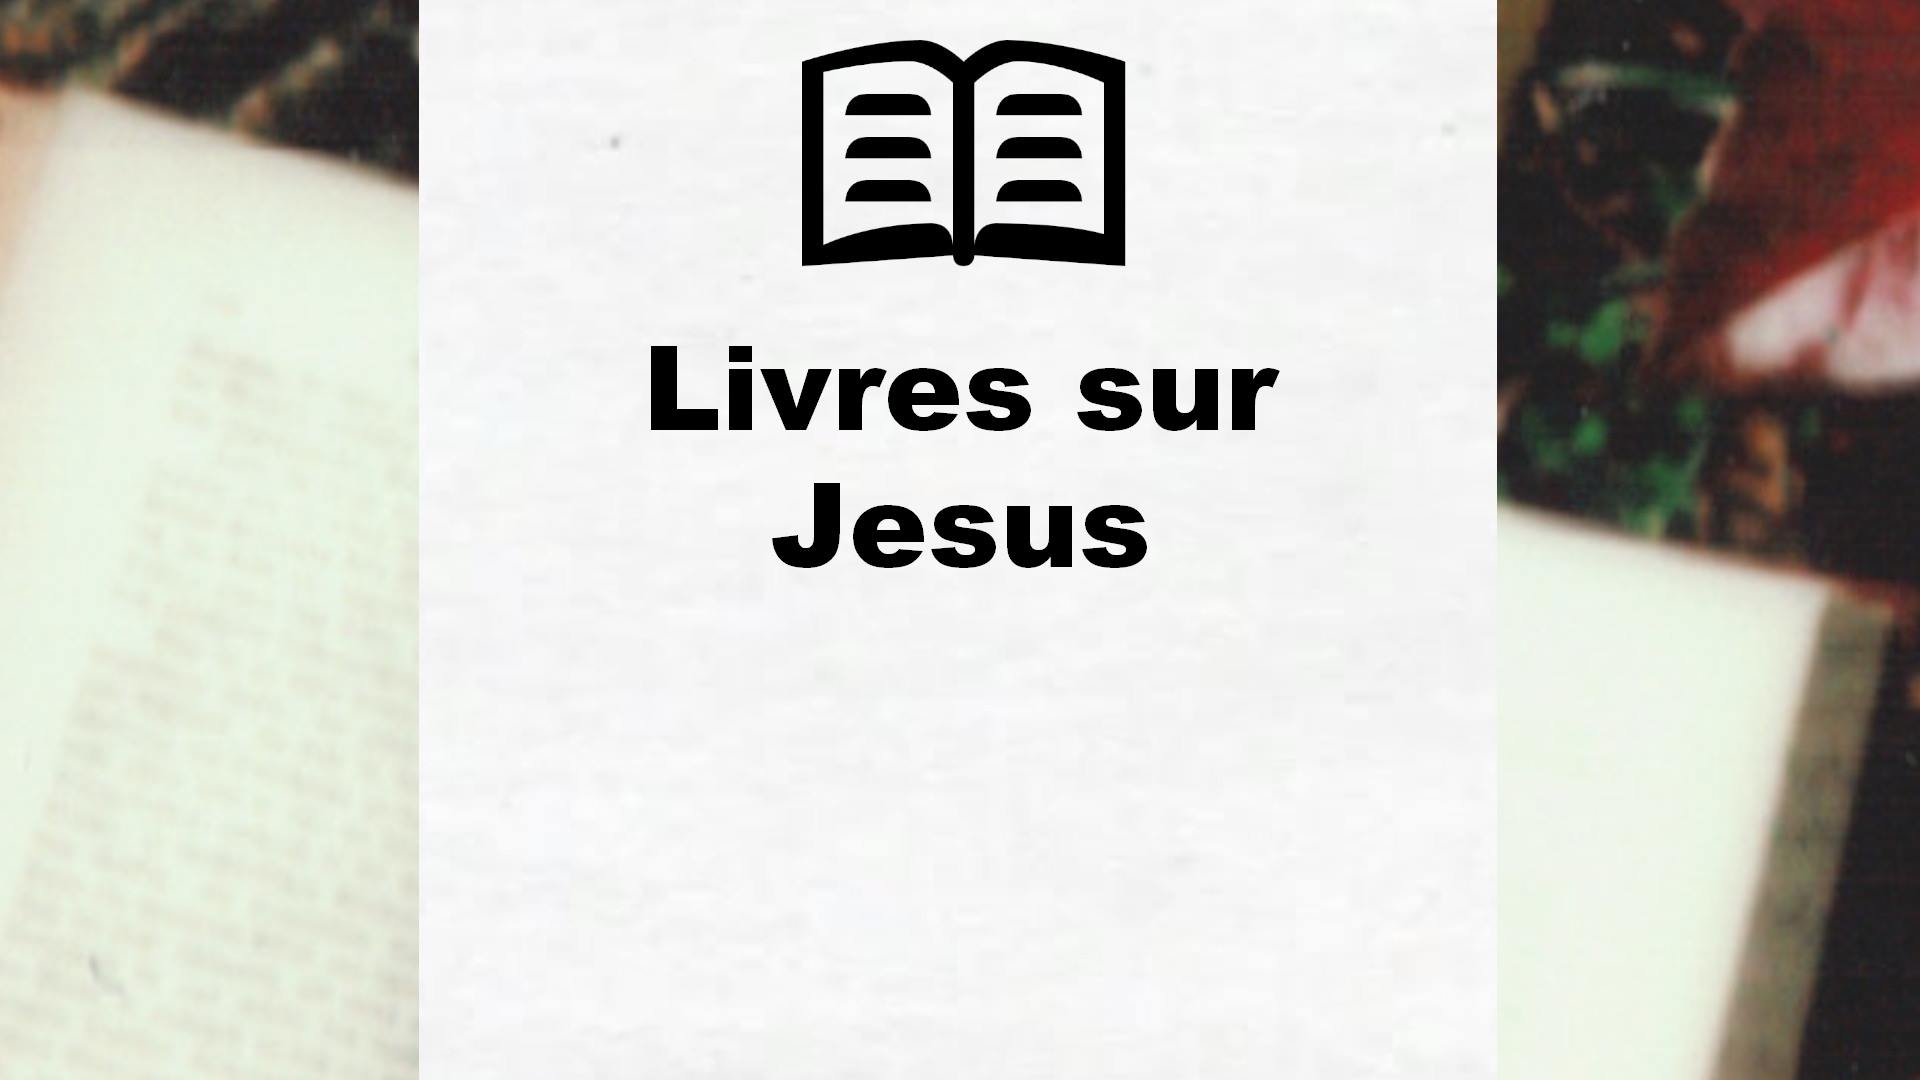 Livres sur Jesus